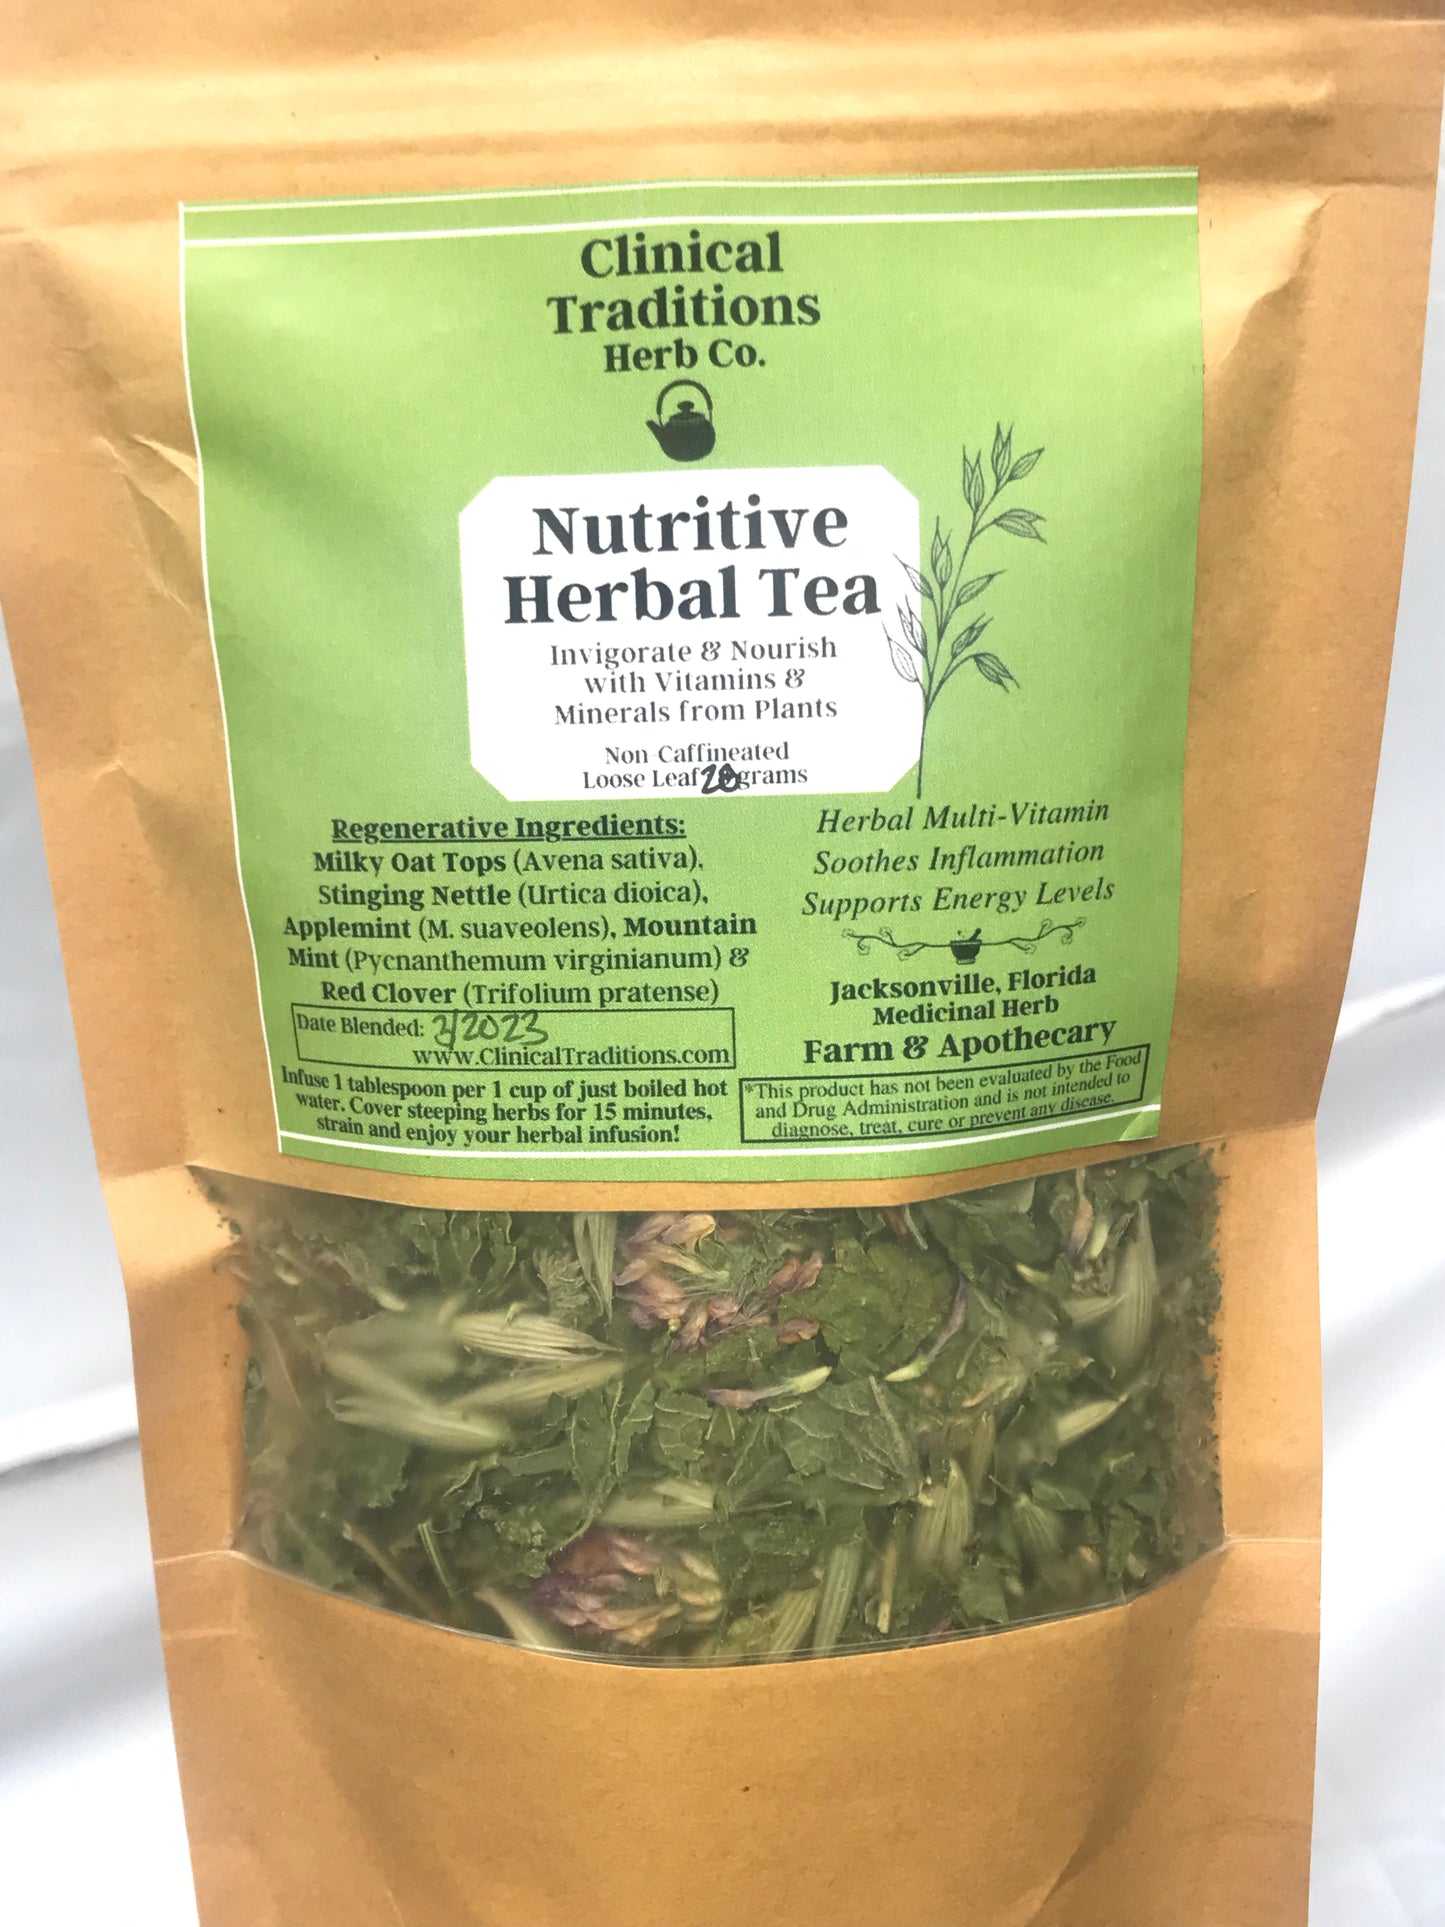 Nutritive Herbal Tea